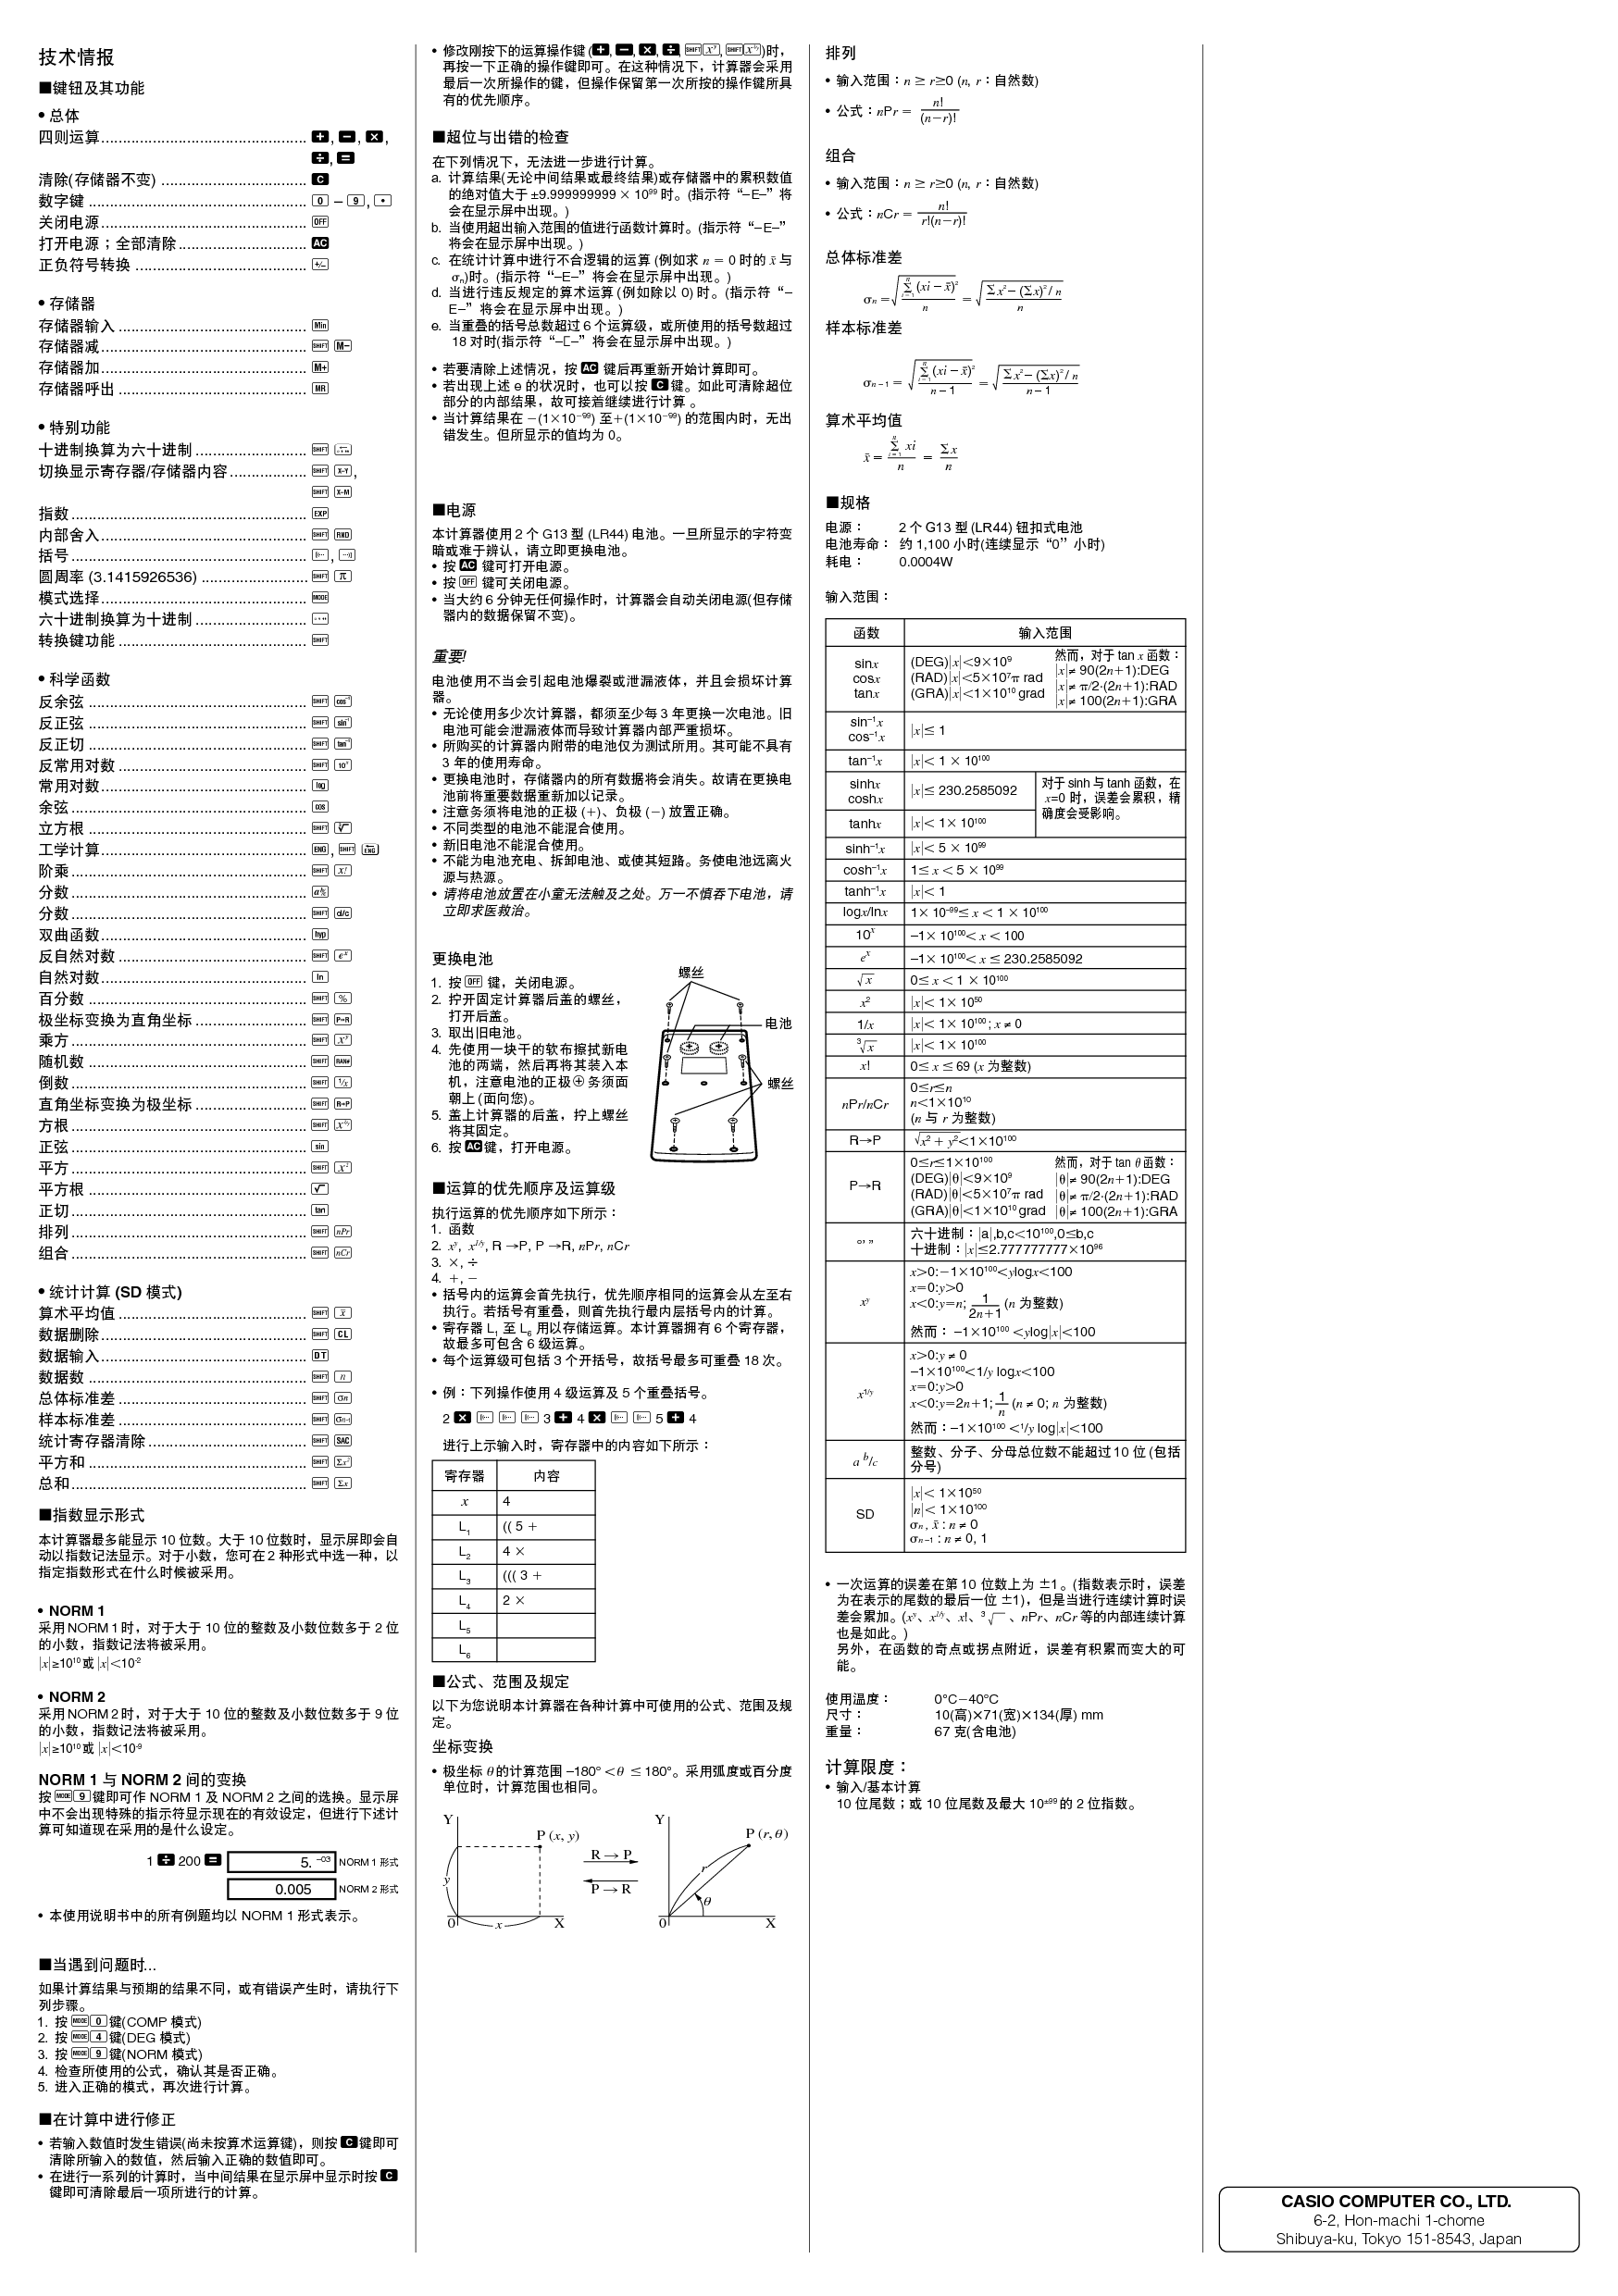 卡西欧 Casio FX-220 使用说明书 第1页